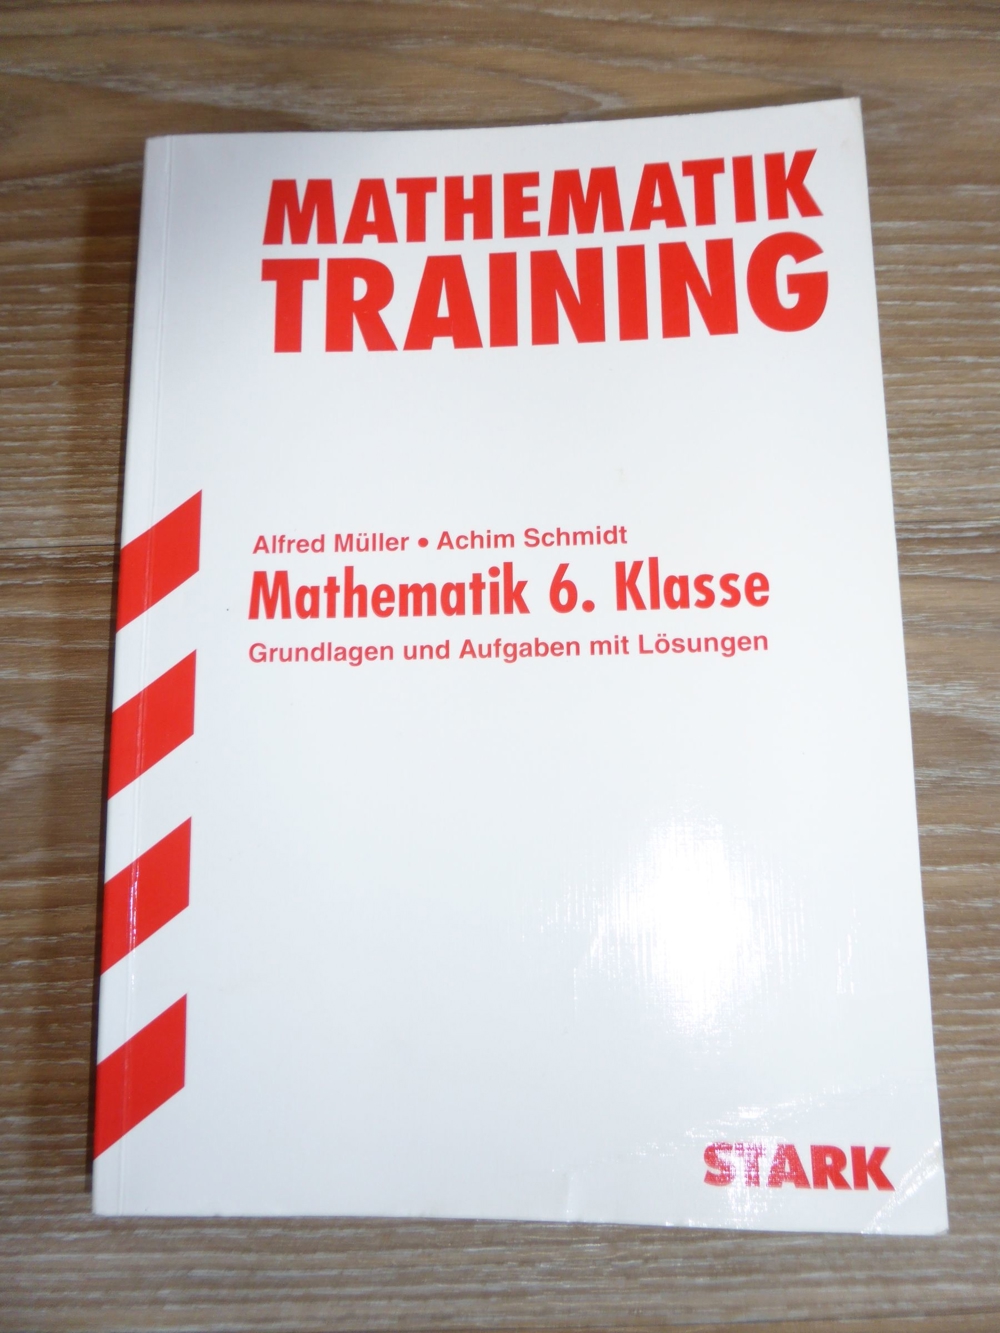 Mathematik Training 6. Klasse